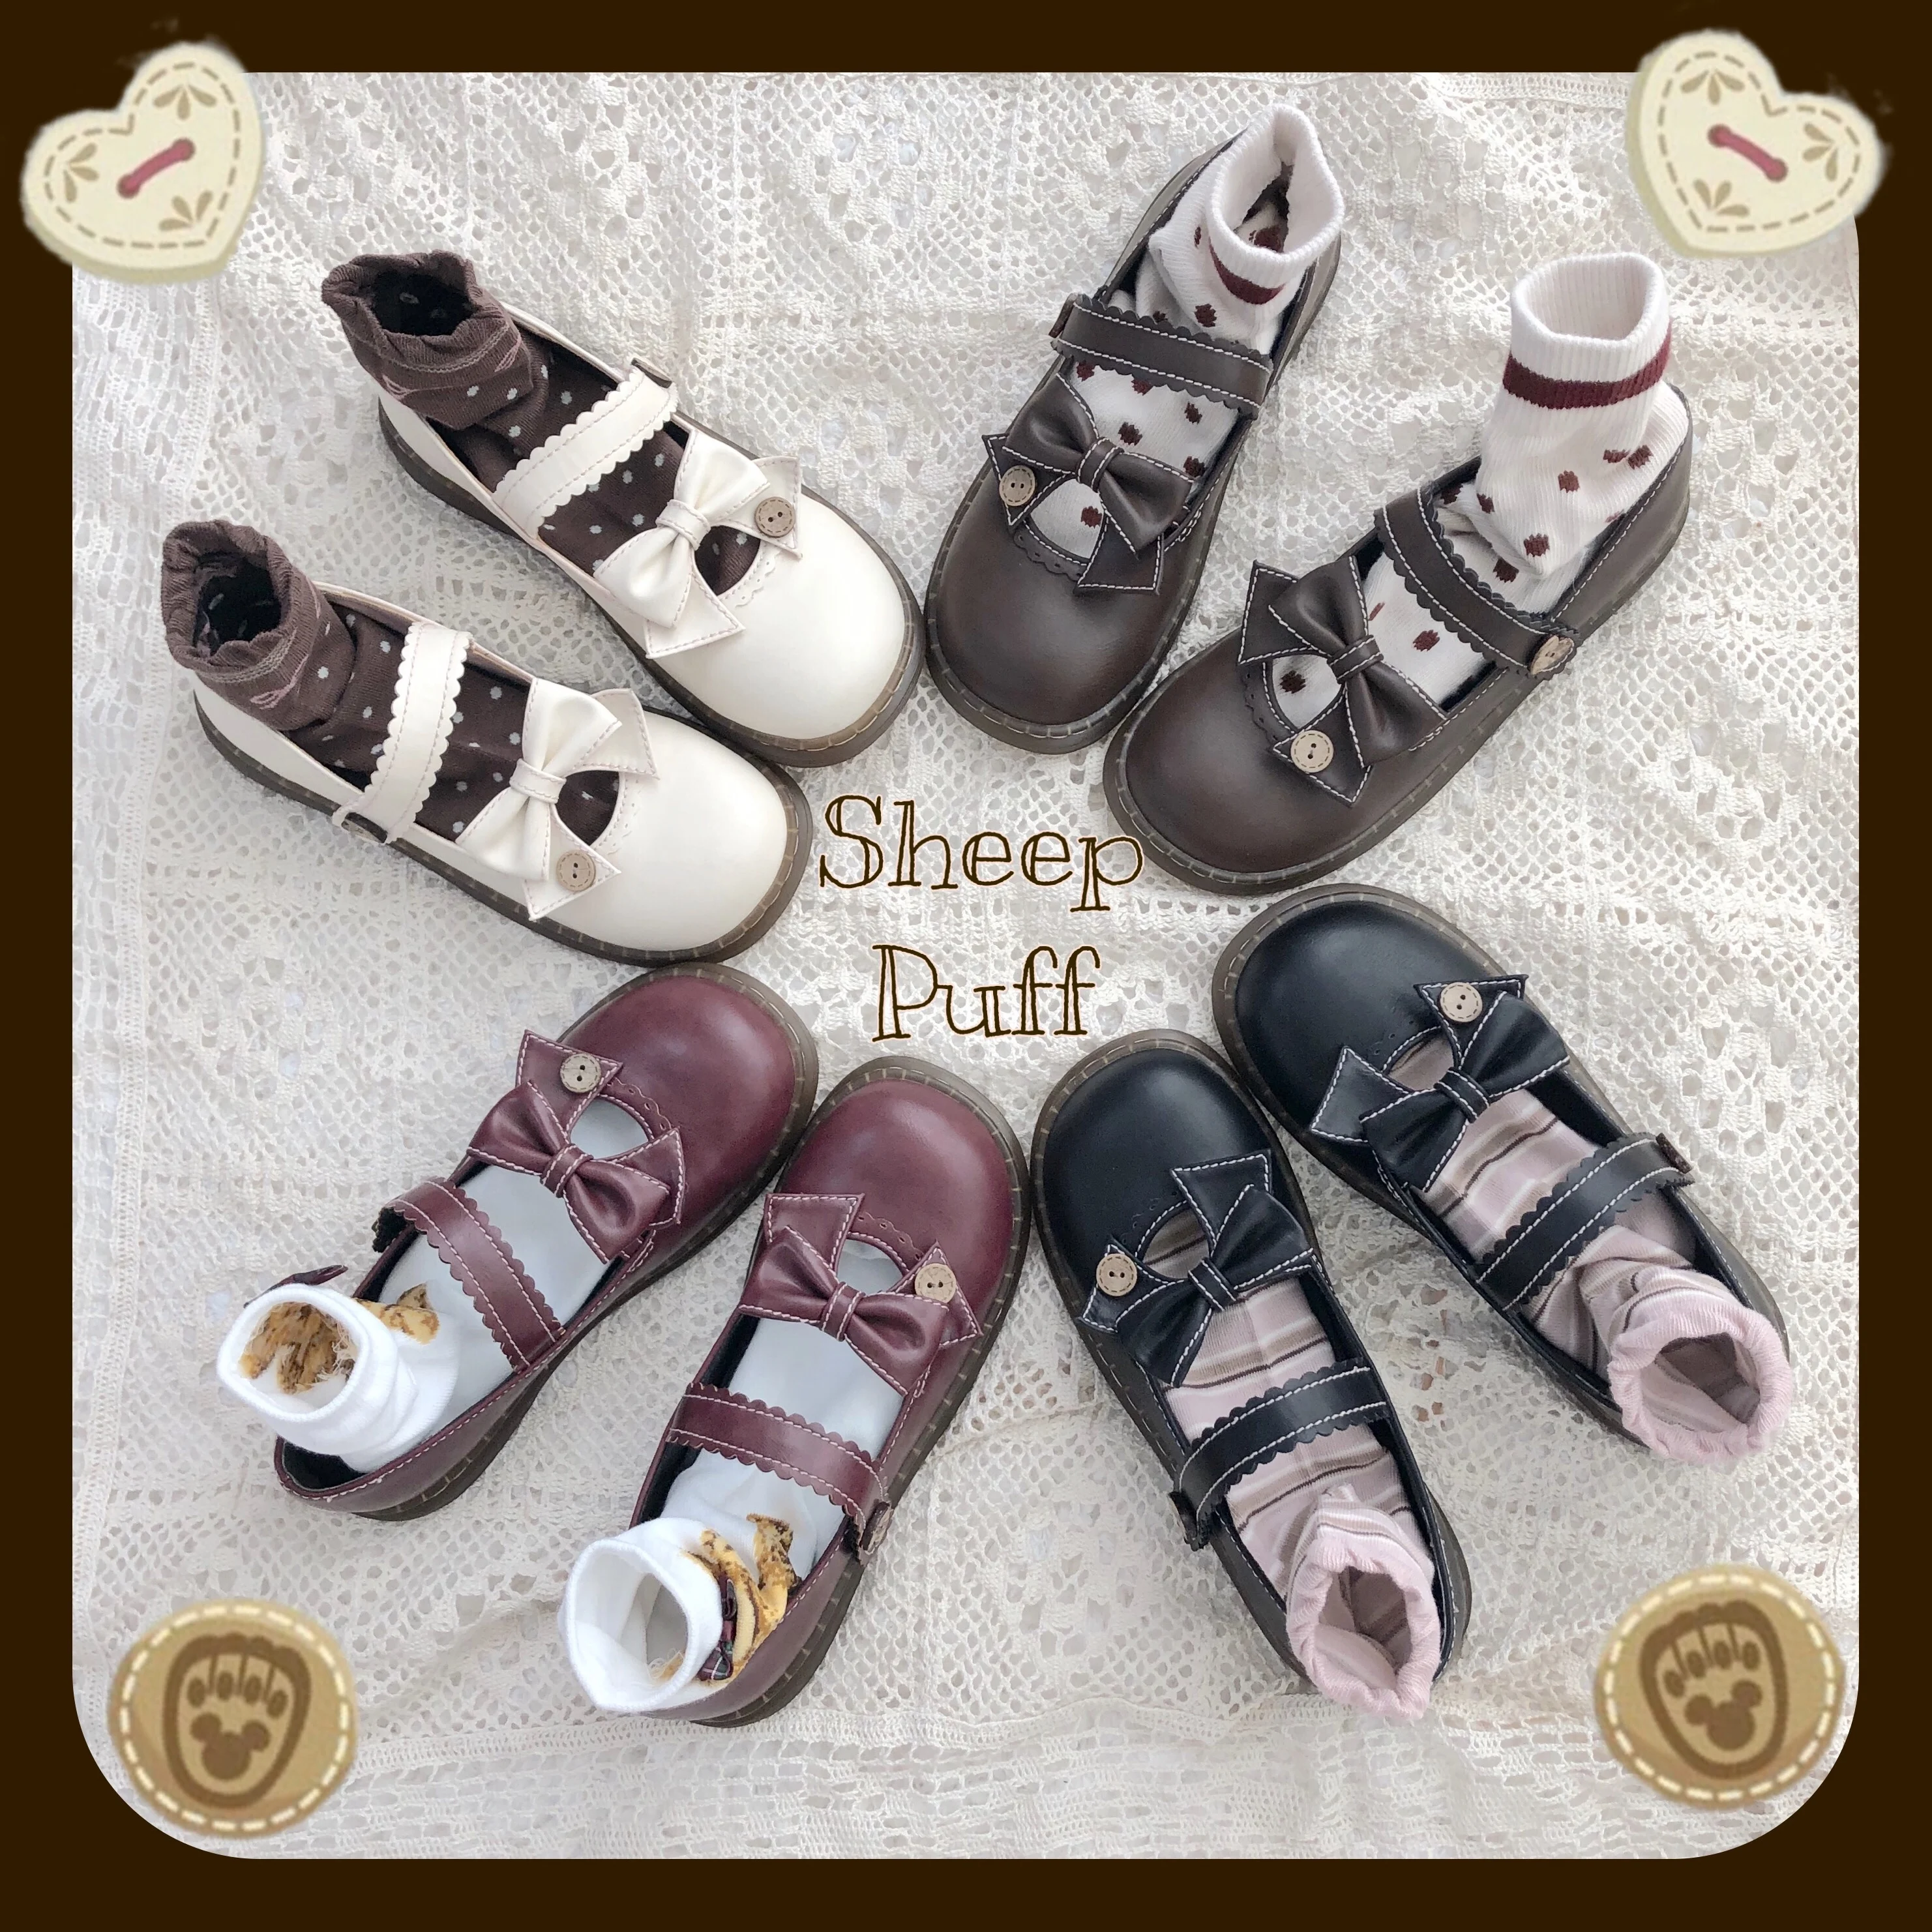 Японские милые туфли с ремешками, туфли в стиле «Лолита» в винтажном стиле; круглый носок; удобная женская обувь милый кружевной бант кнопка обувь kawaii для девочек; костюм для костюмированной вечеринки